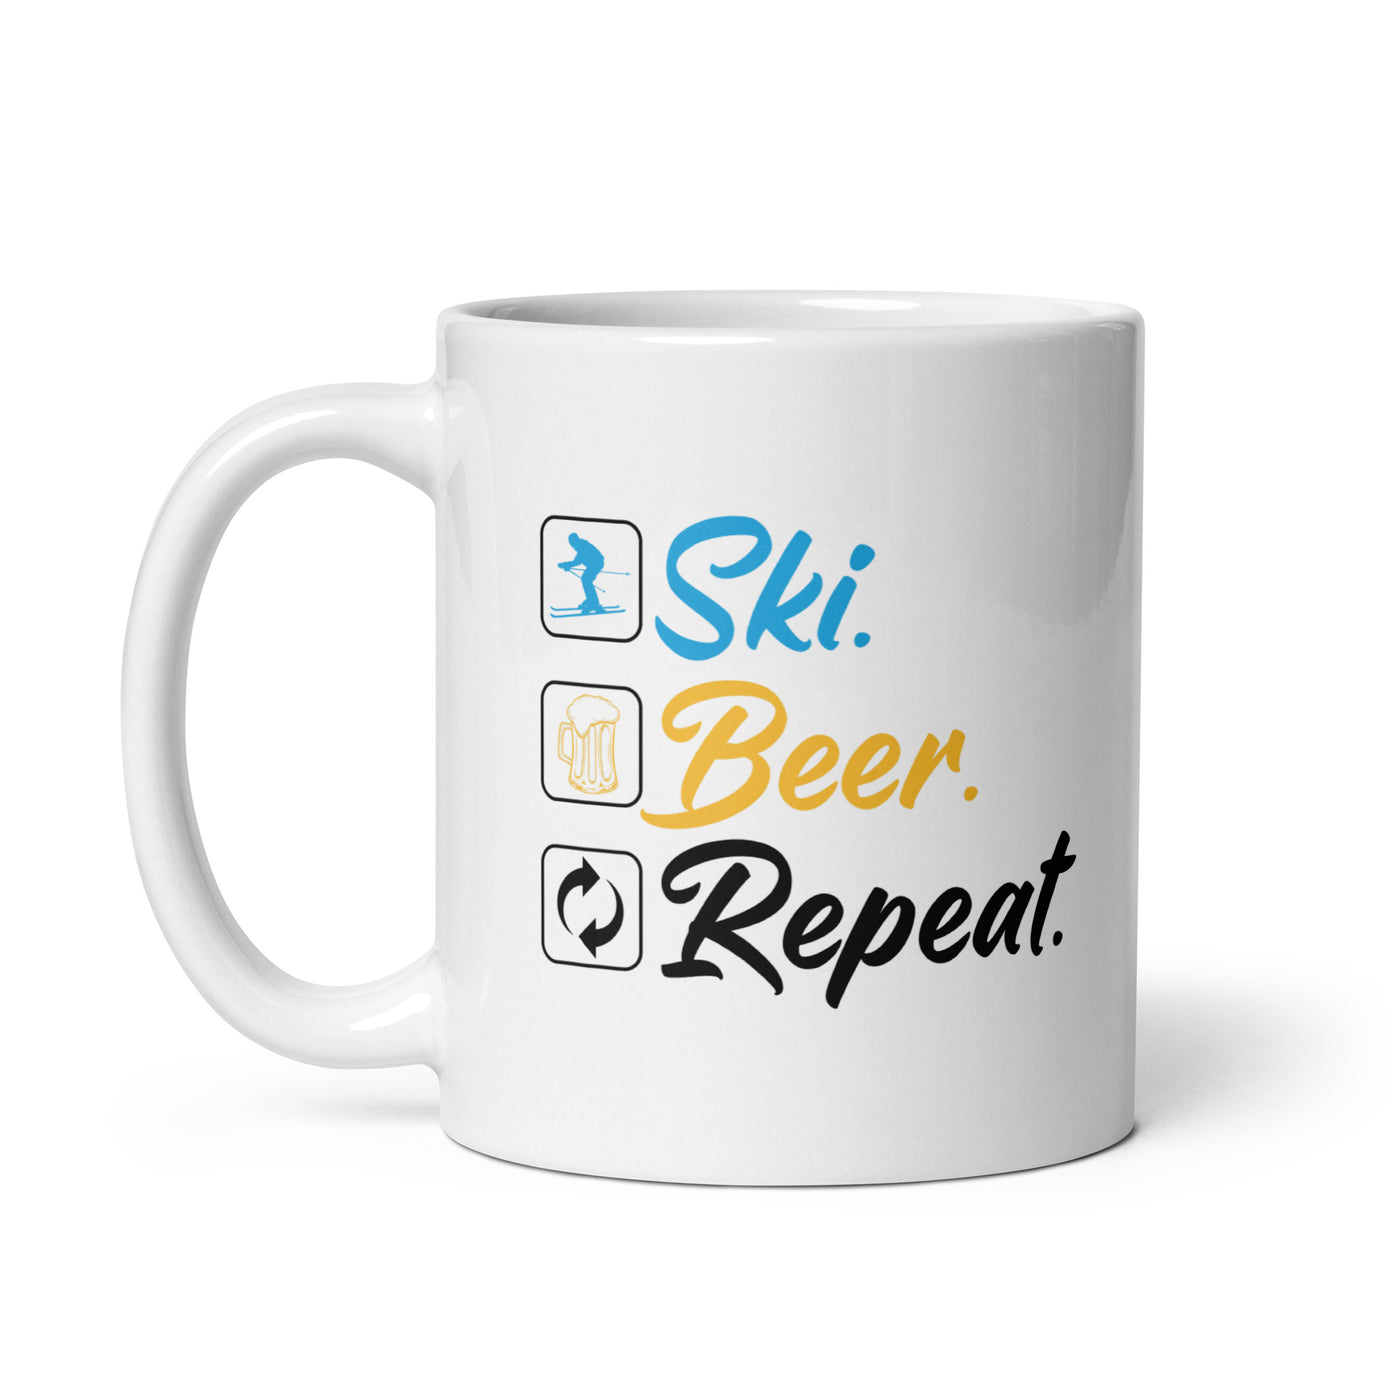 Ski. Beer. Repeat. - (S.K) - Tasse klettern 11oz